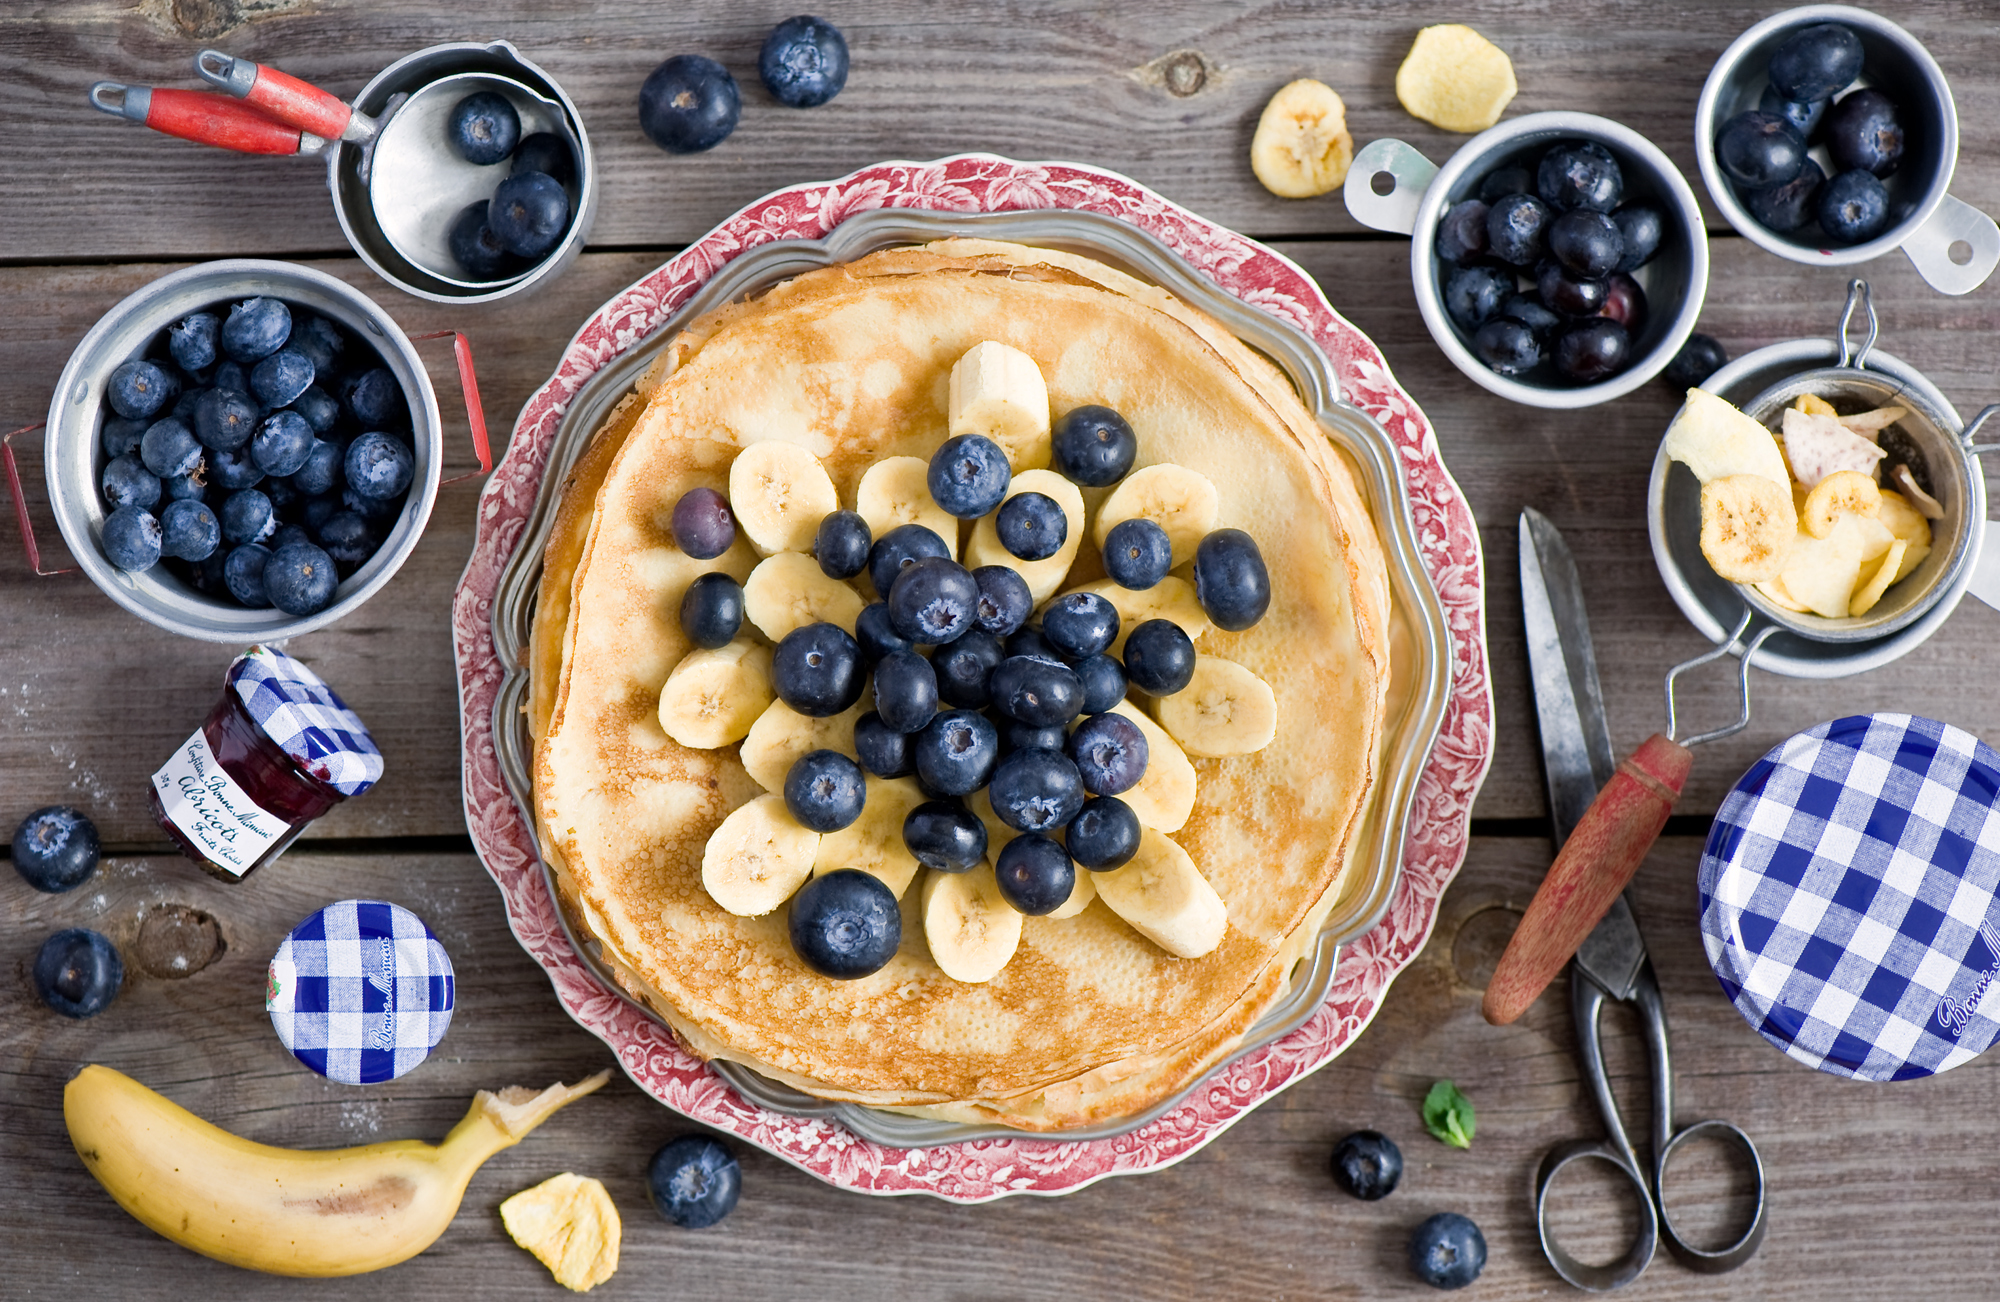 Free download wallpaper Food, Blueberry, Banana, Pancake on your PC desktop